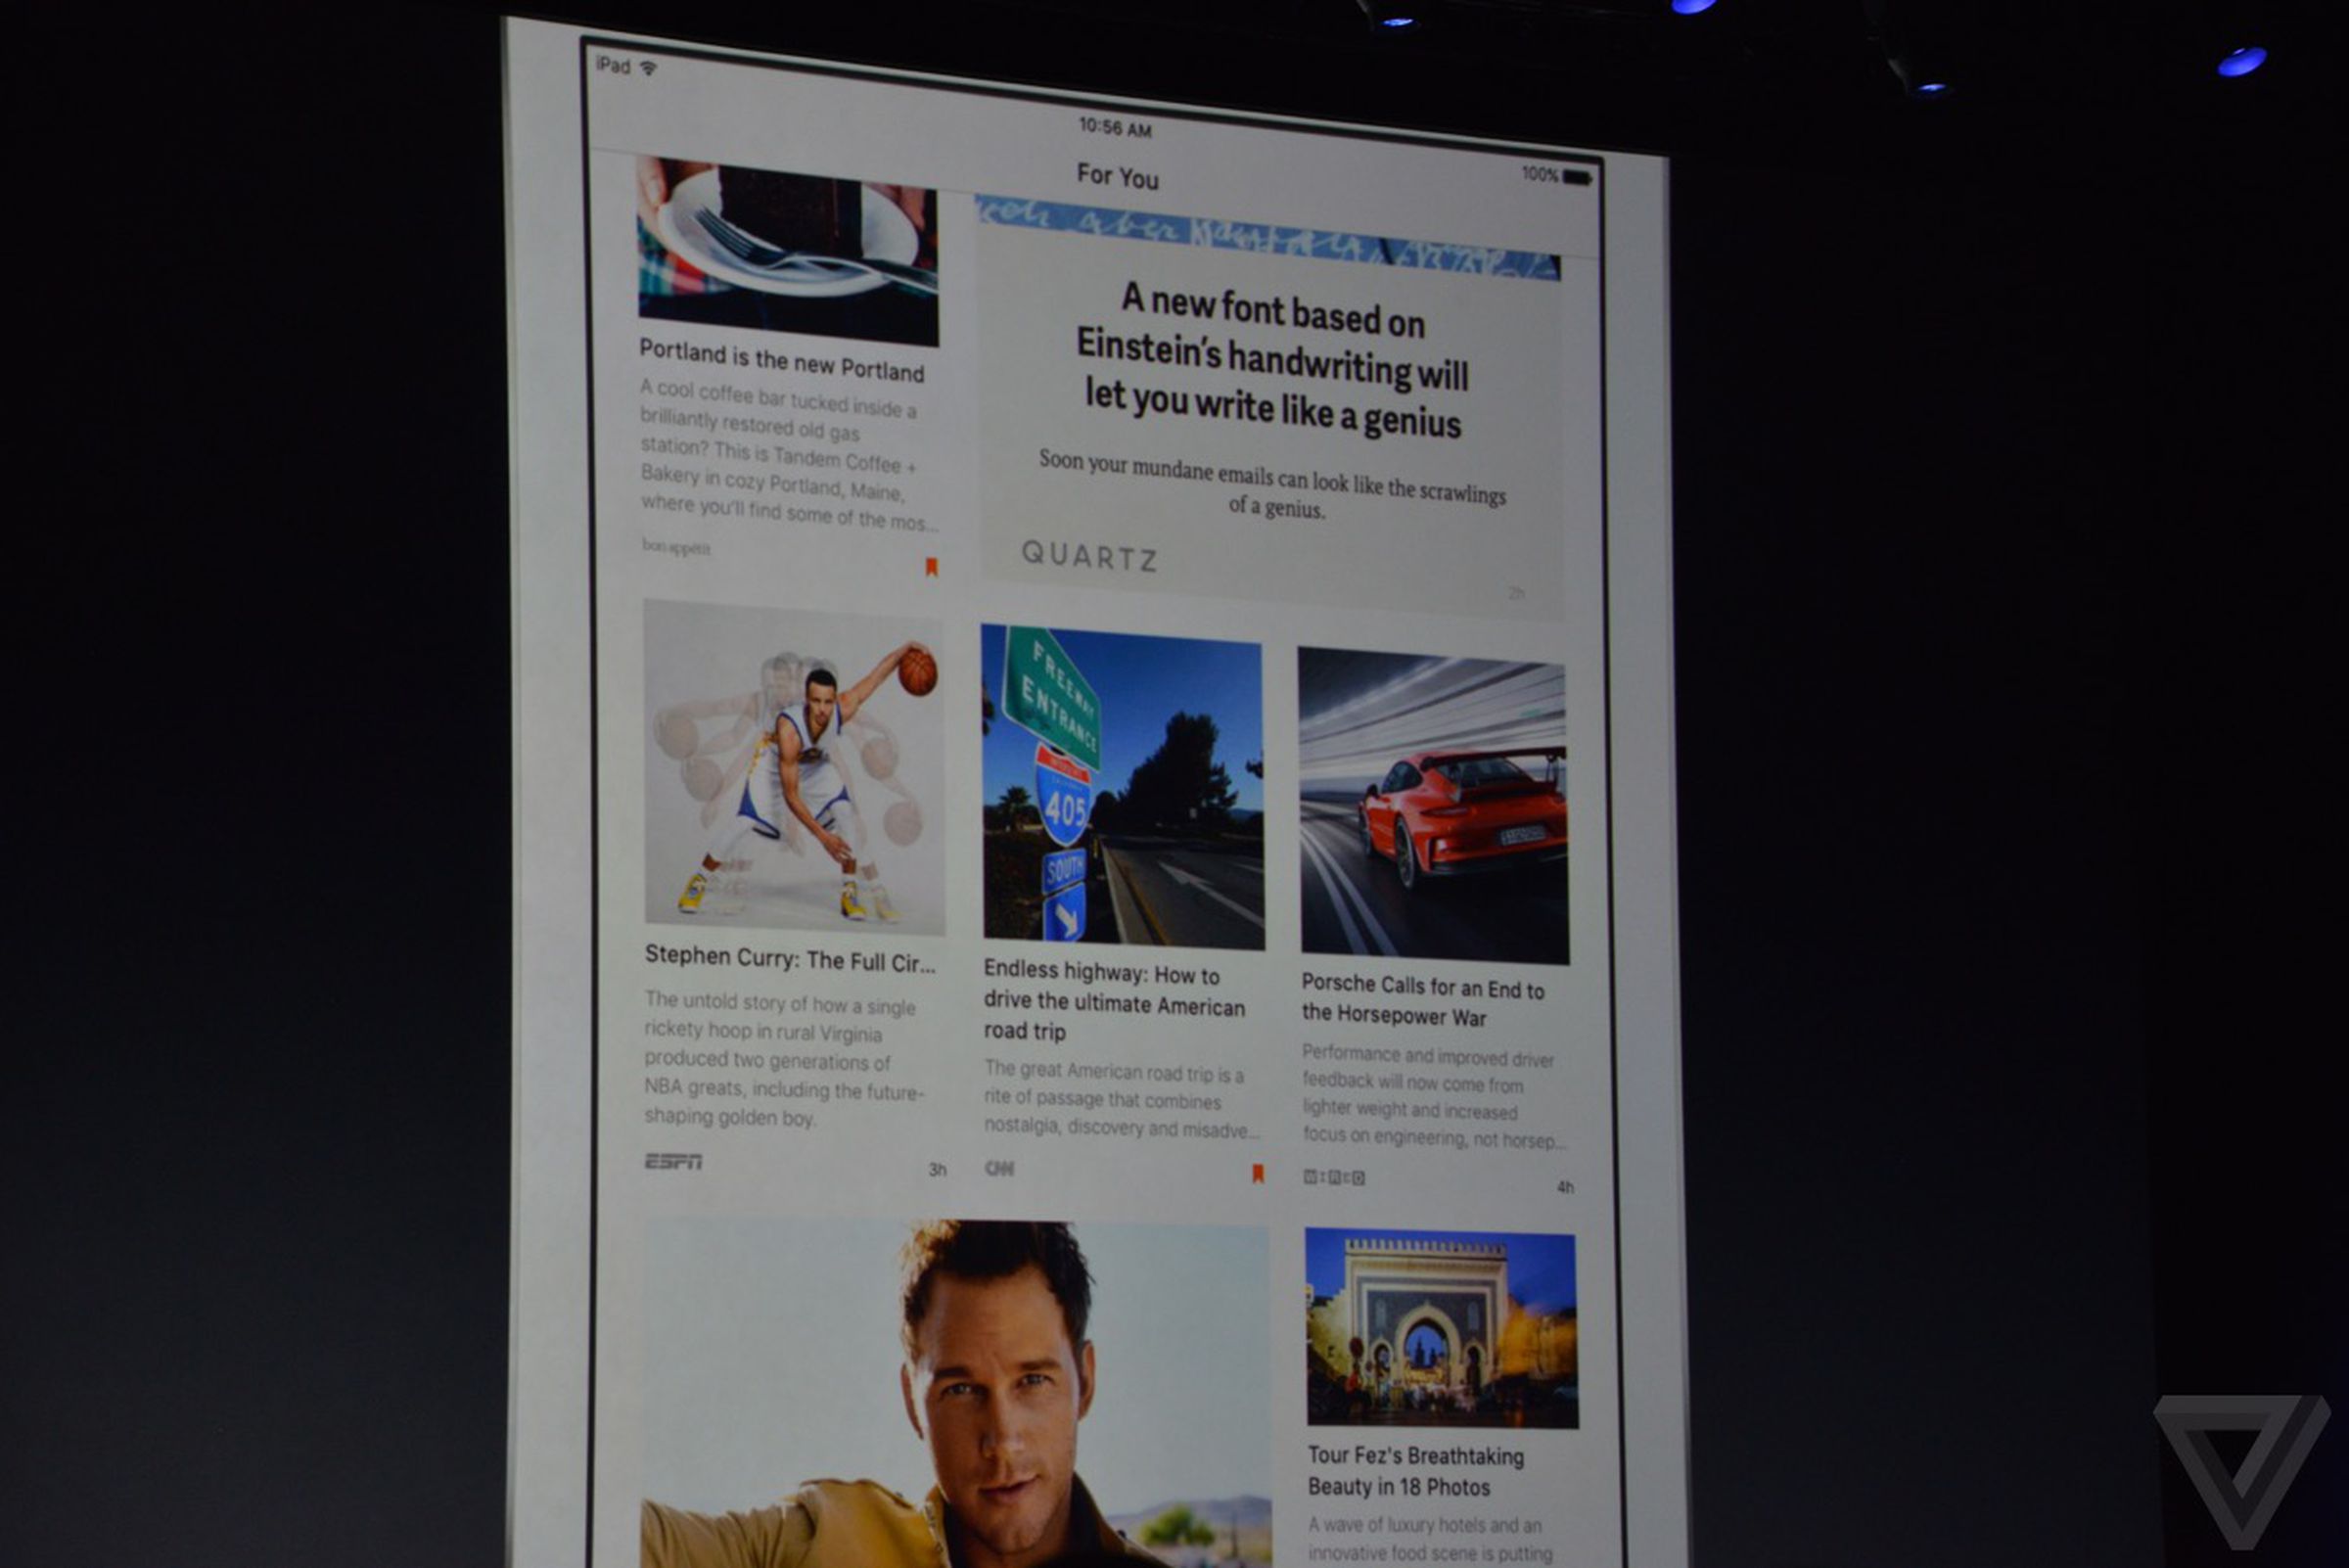 iOS 9 News app photos